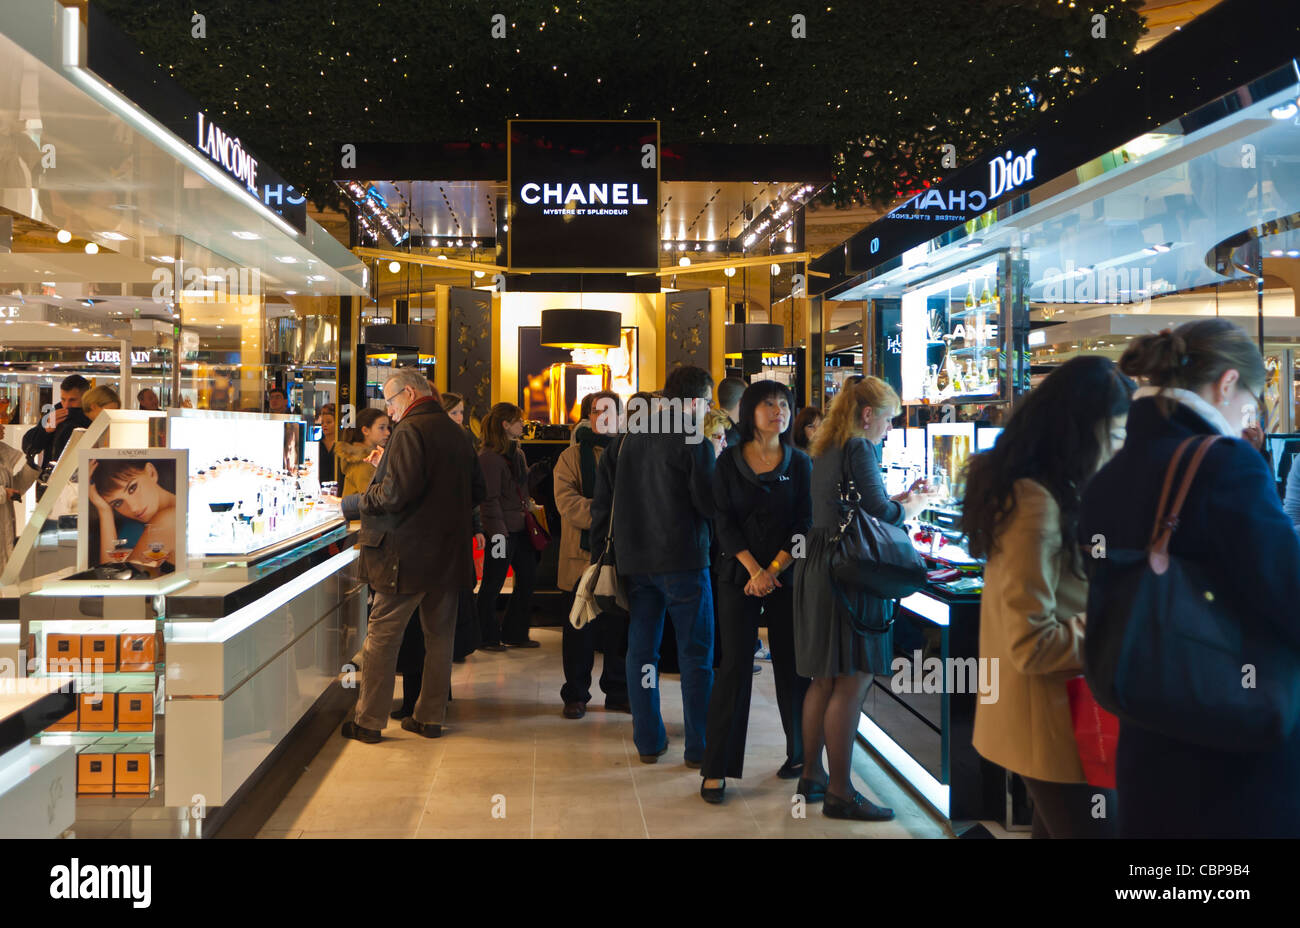 París, Francia, famosas marcas de lujo, cosméticos dentro de 'Contador' grandes almacenes Galeries Lafayette, la gente las compras de Navidad, chanel Foto de stock